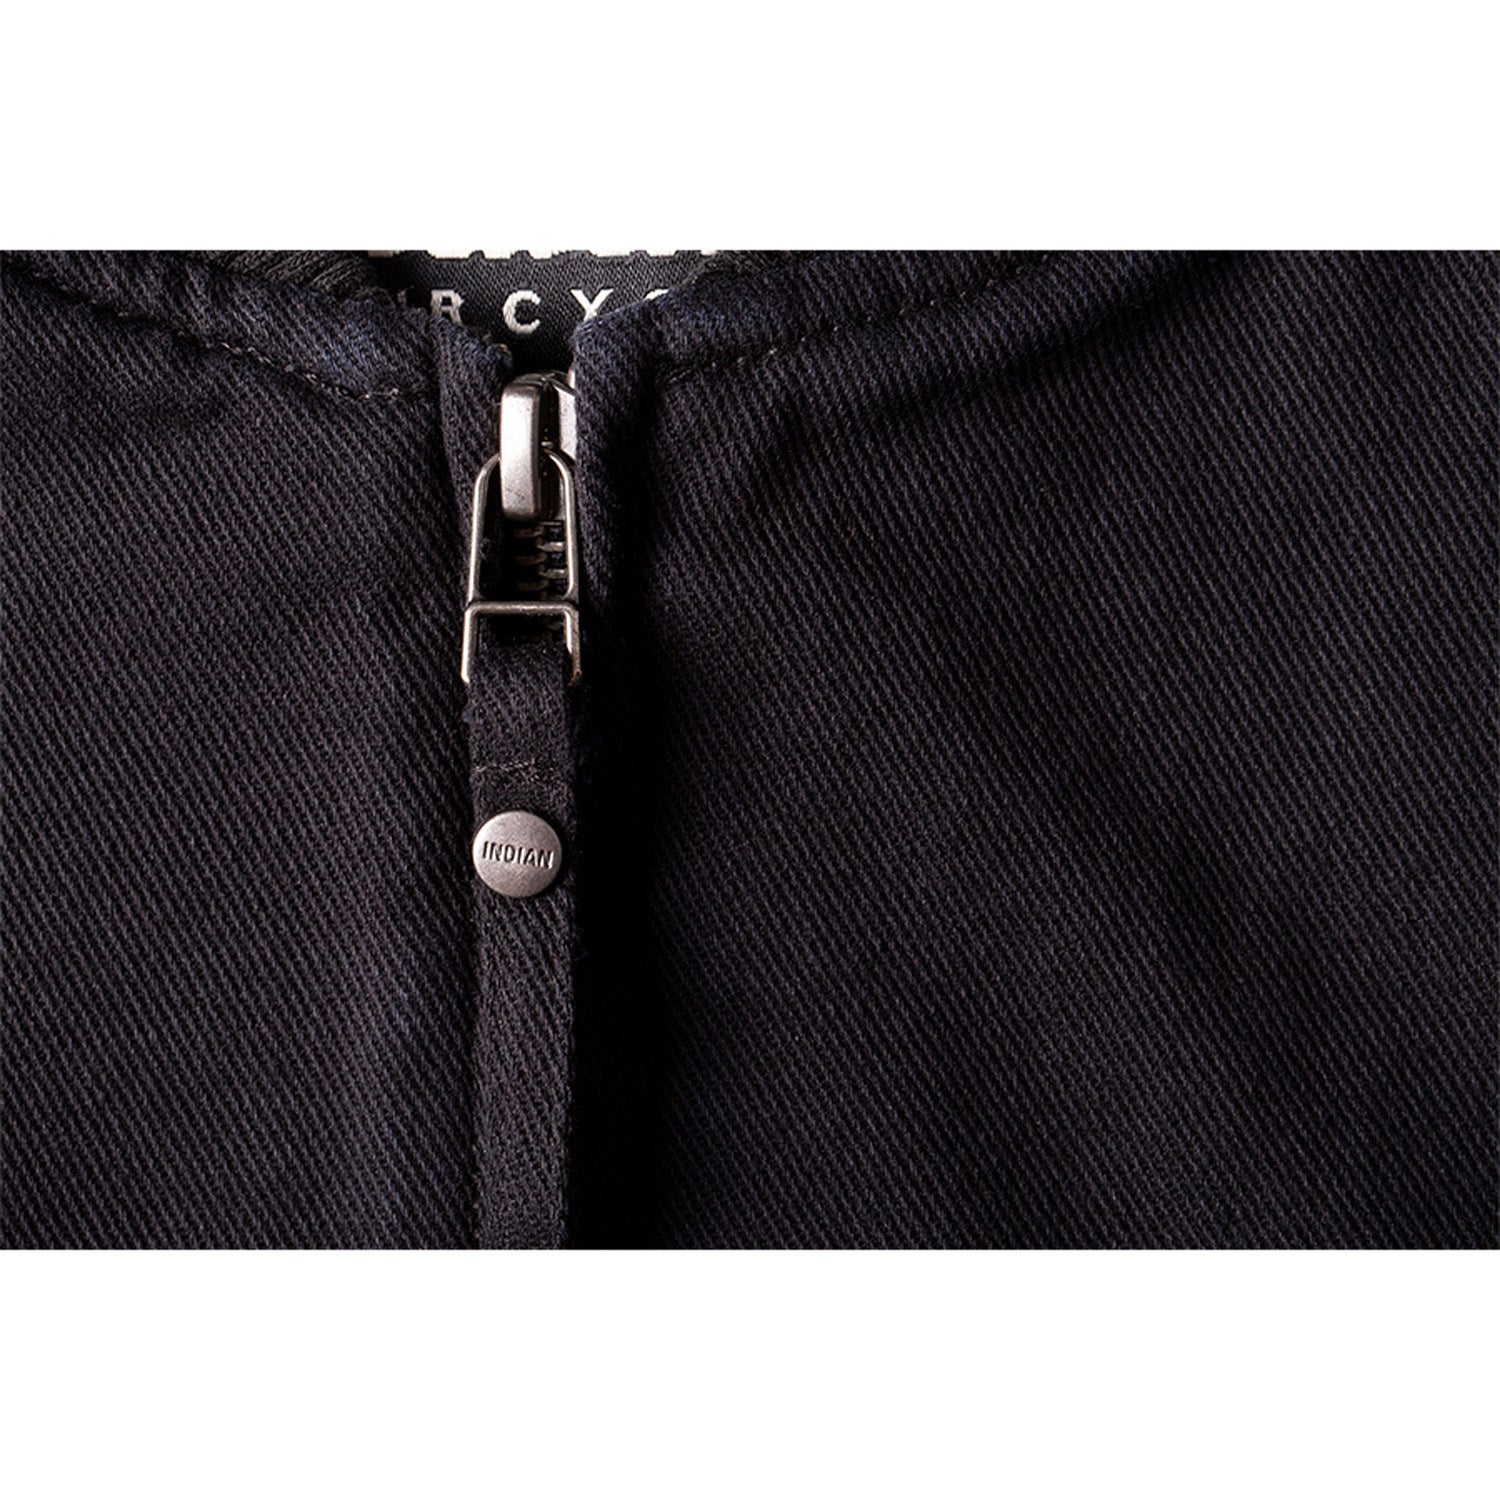 Men's Textile Hudson Vest, Black